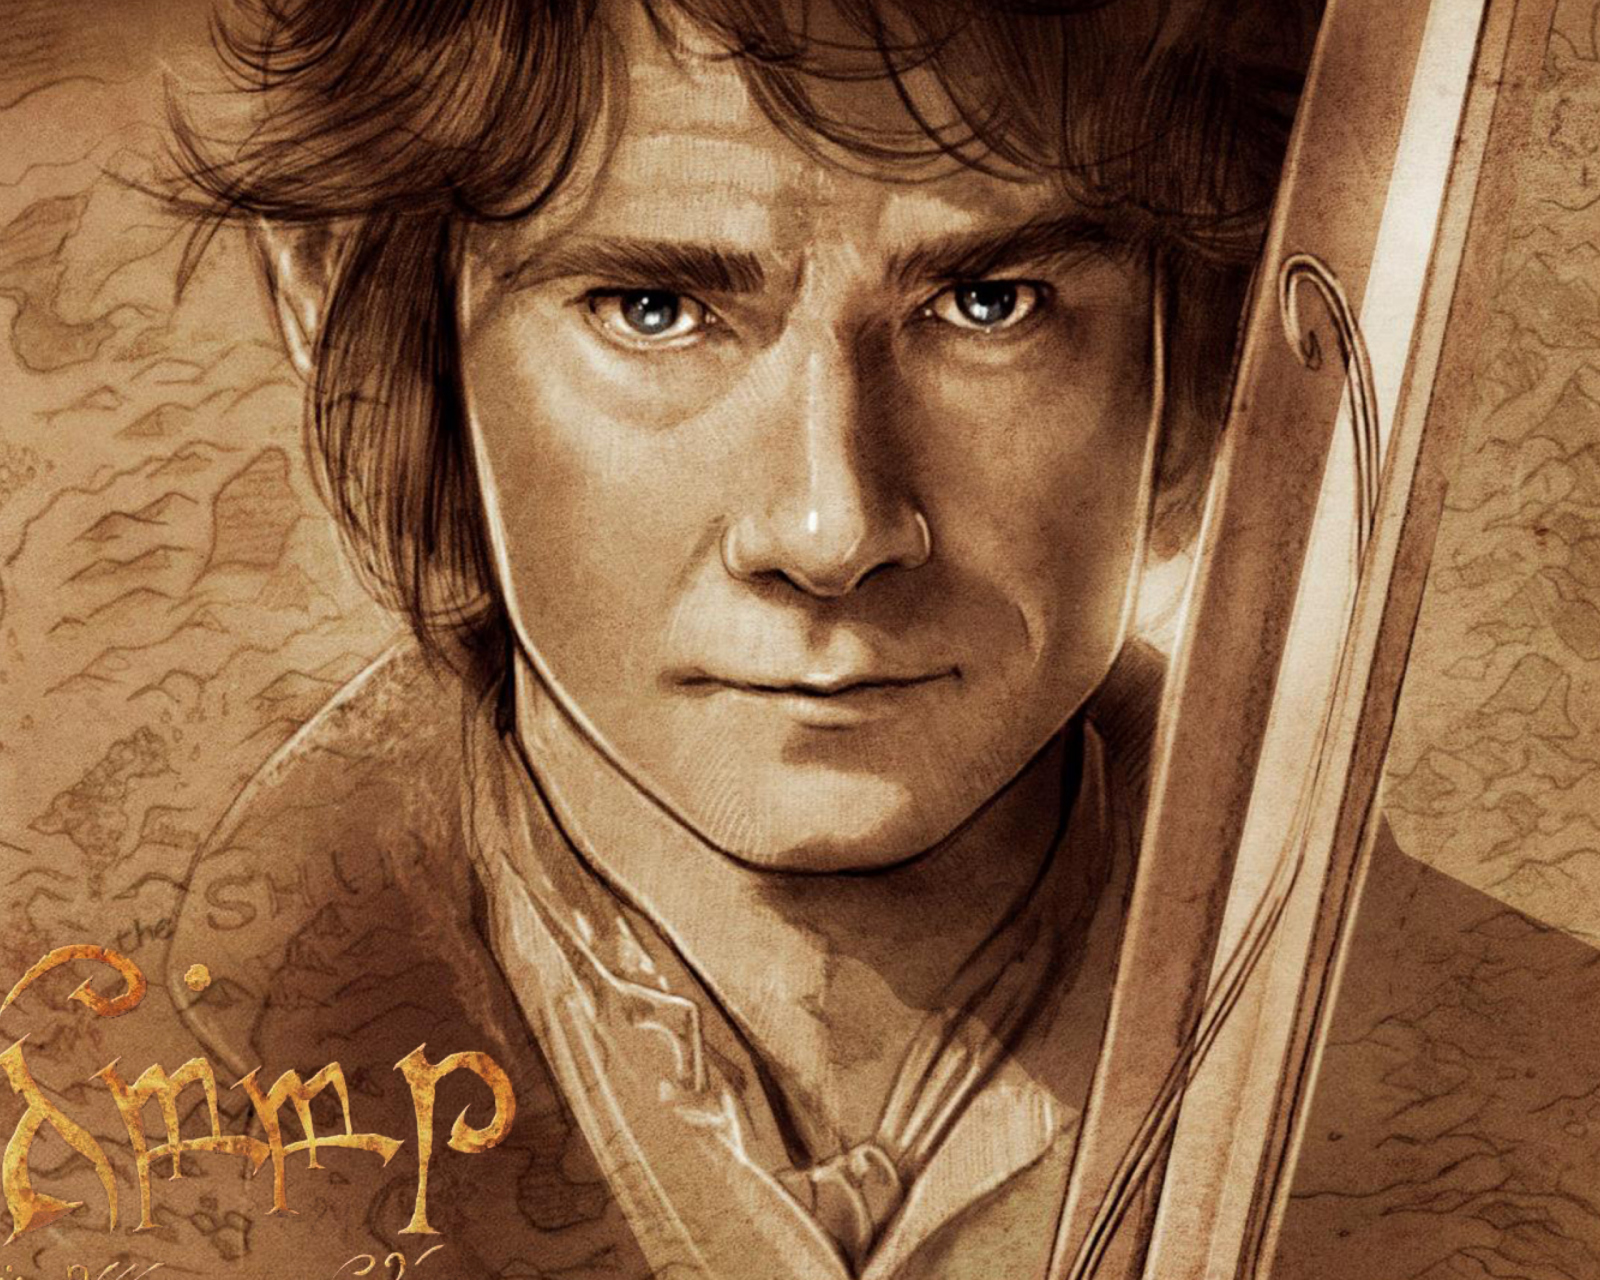 The Hobbit Bilbo Baggins Artwork screenshot #1 1600x1280